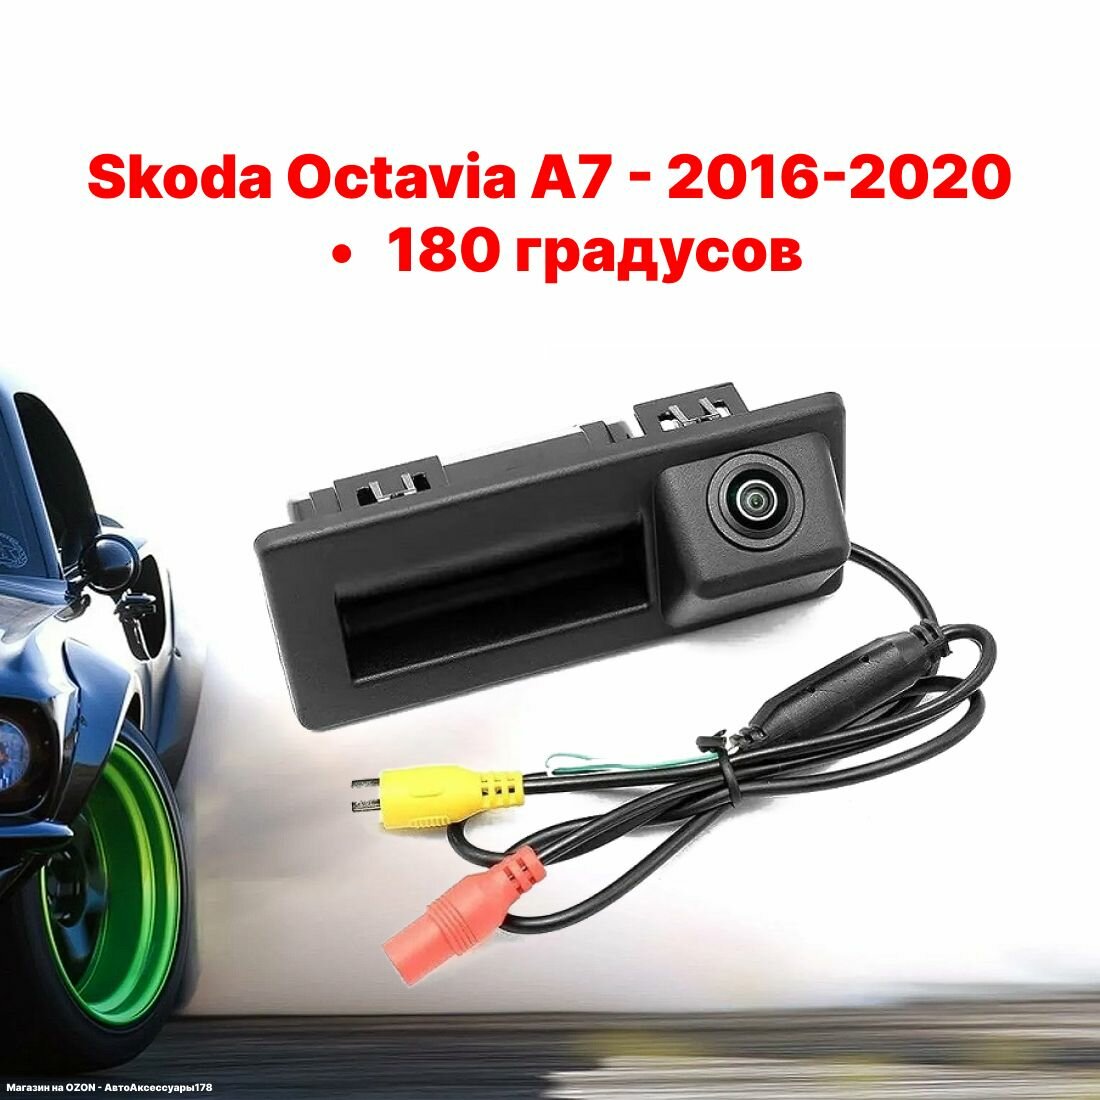 Камера заднего вида в ручку багажника Шкода Октавия А7 - 180 градусов (Skoda Octavia А7 - 2015-2020)